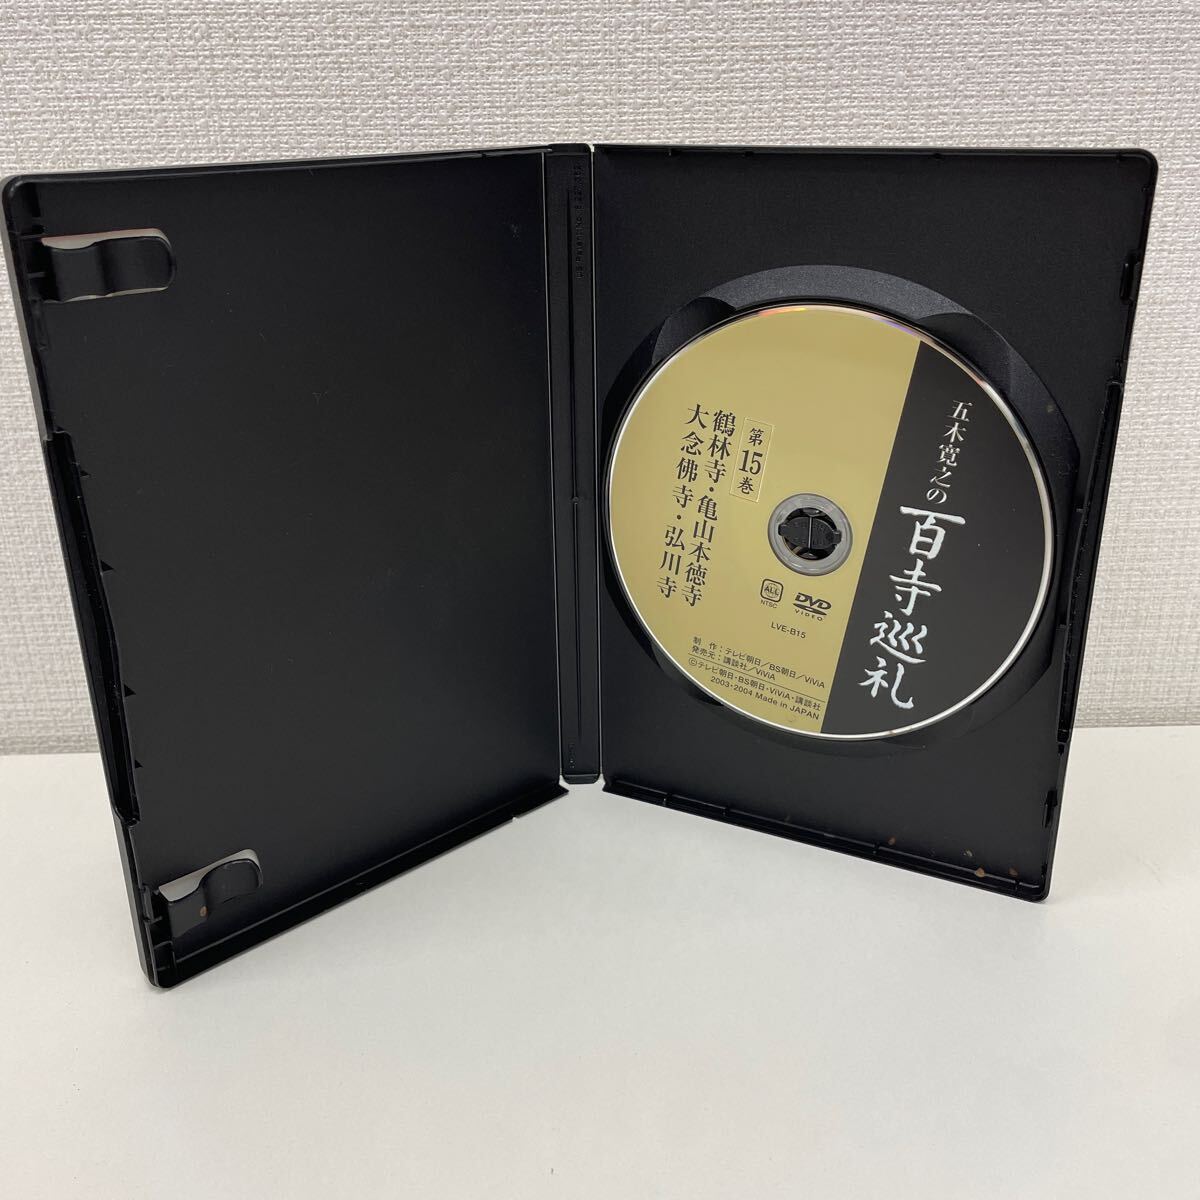 [1 иен старт ] Itsuki Hiroyuki. 100 храм пилигрим первый сборник DVD все 15 шт комплект 